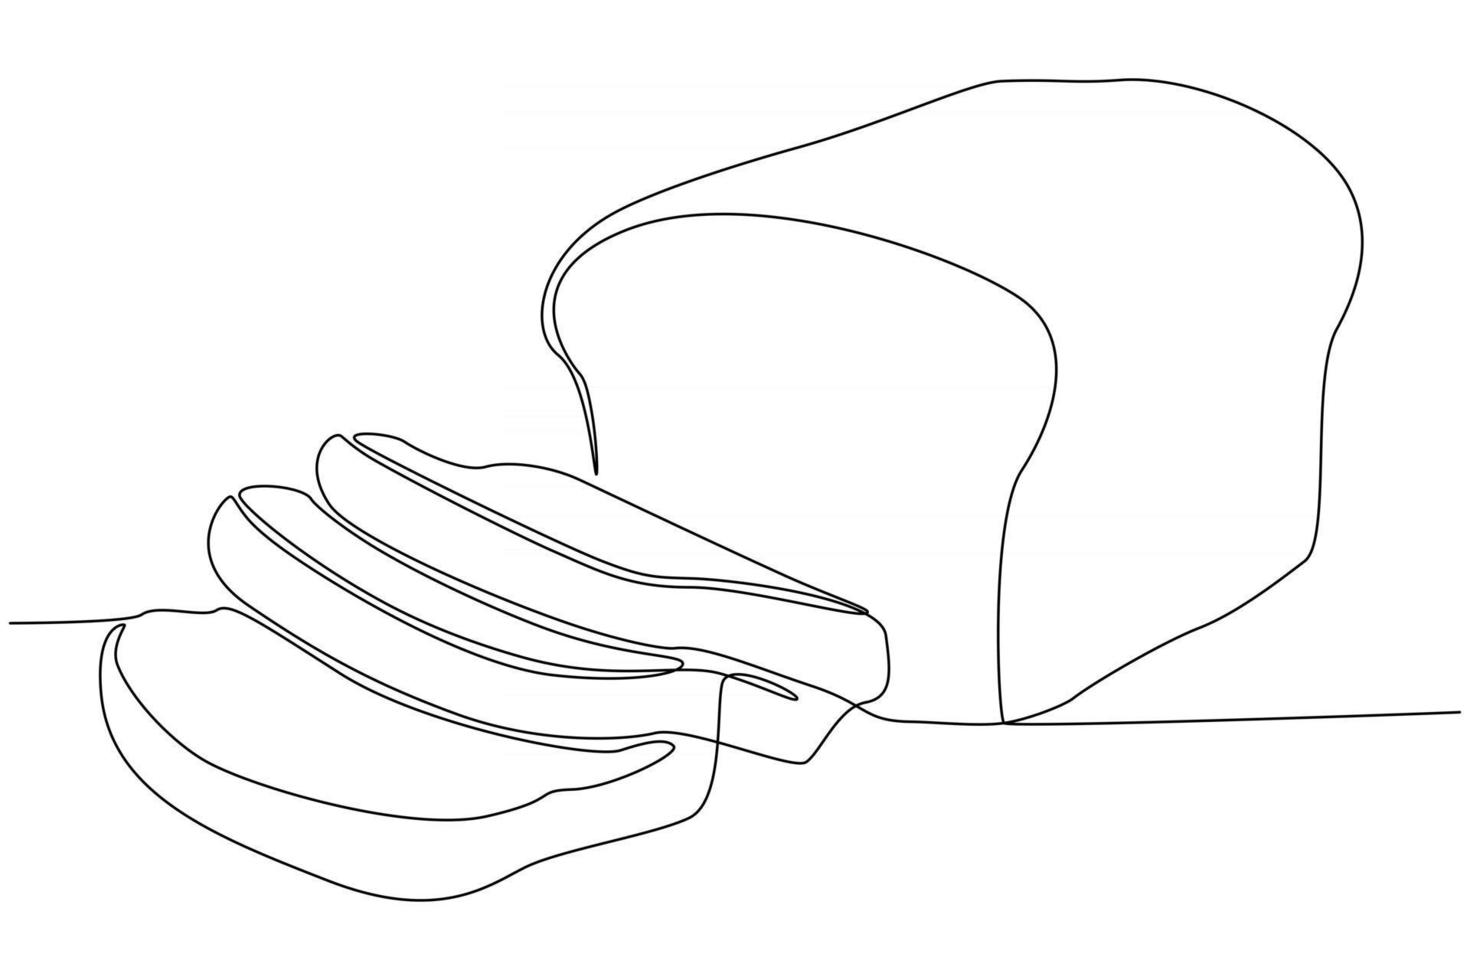 disegno a tratteggio continuo di fette di pane illustrazione vettoriale